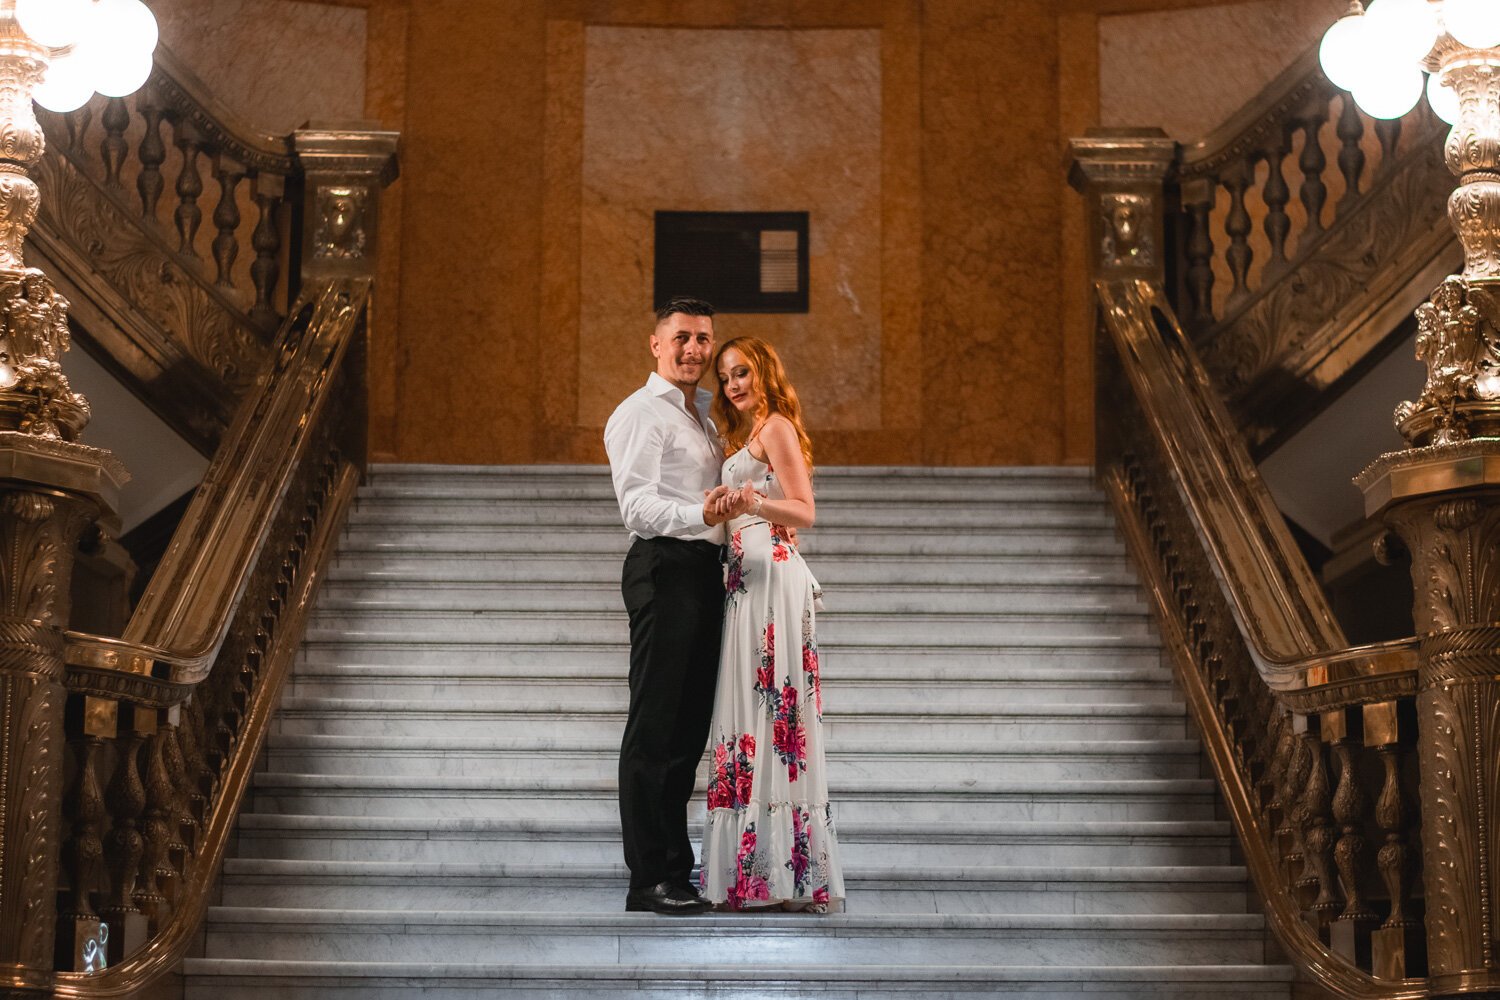 Denver-Colorado-courthouse-wedding-photos-7.jpg